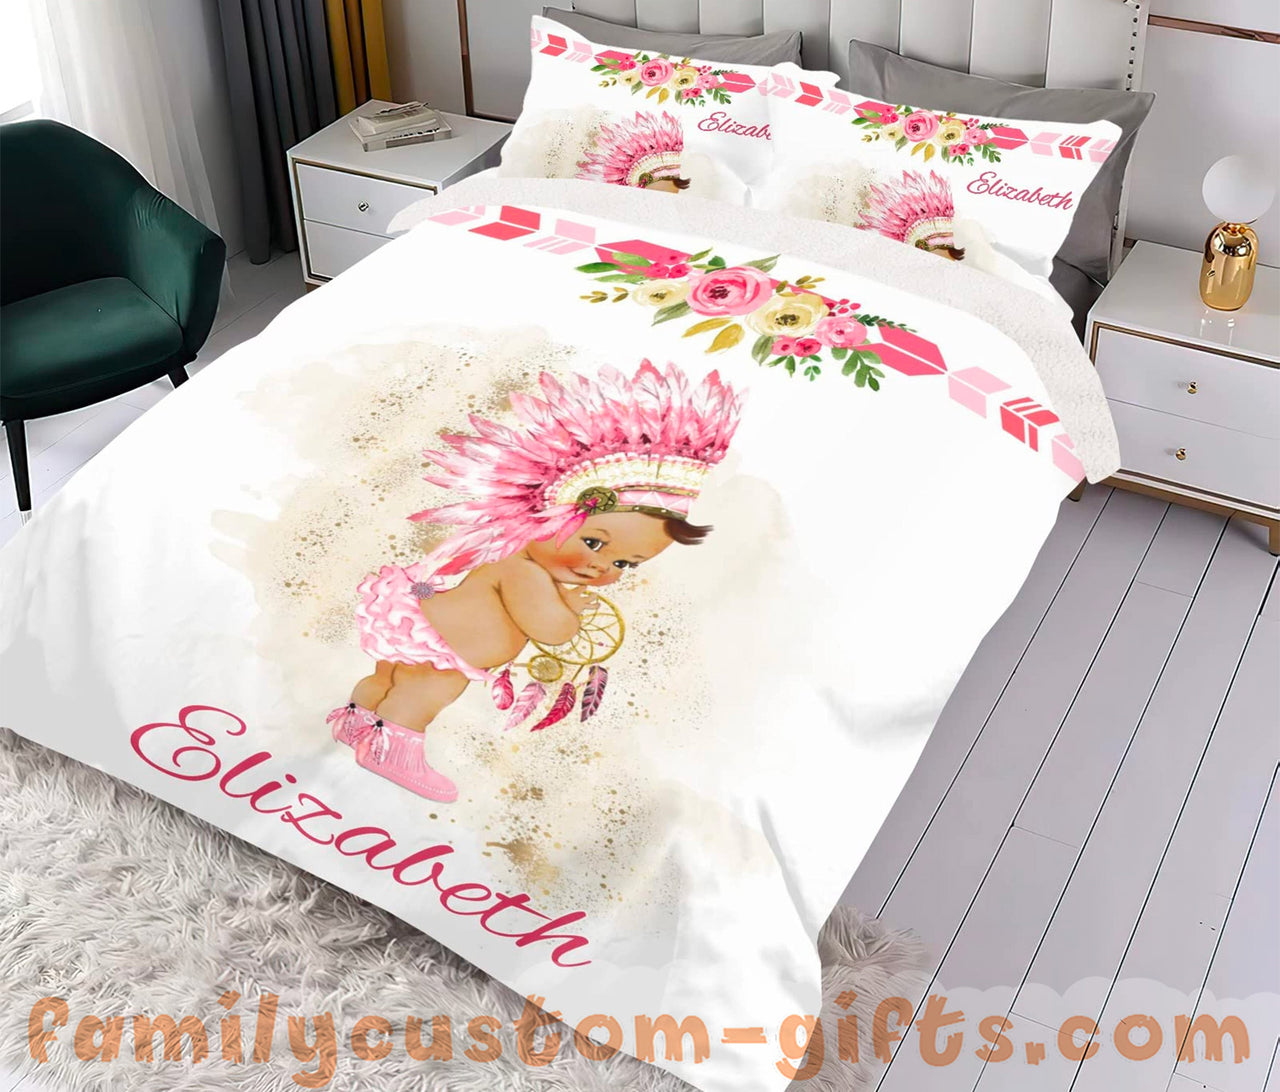 Custom Quilt Sets Exotic Baby Girl Flower Premium Quilt Bedding for Boys Girls Men Women